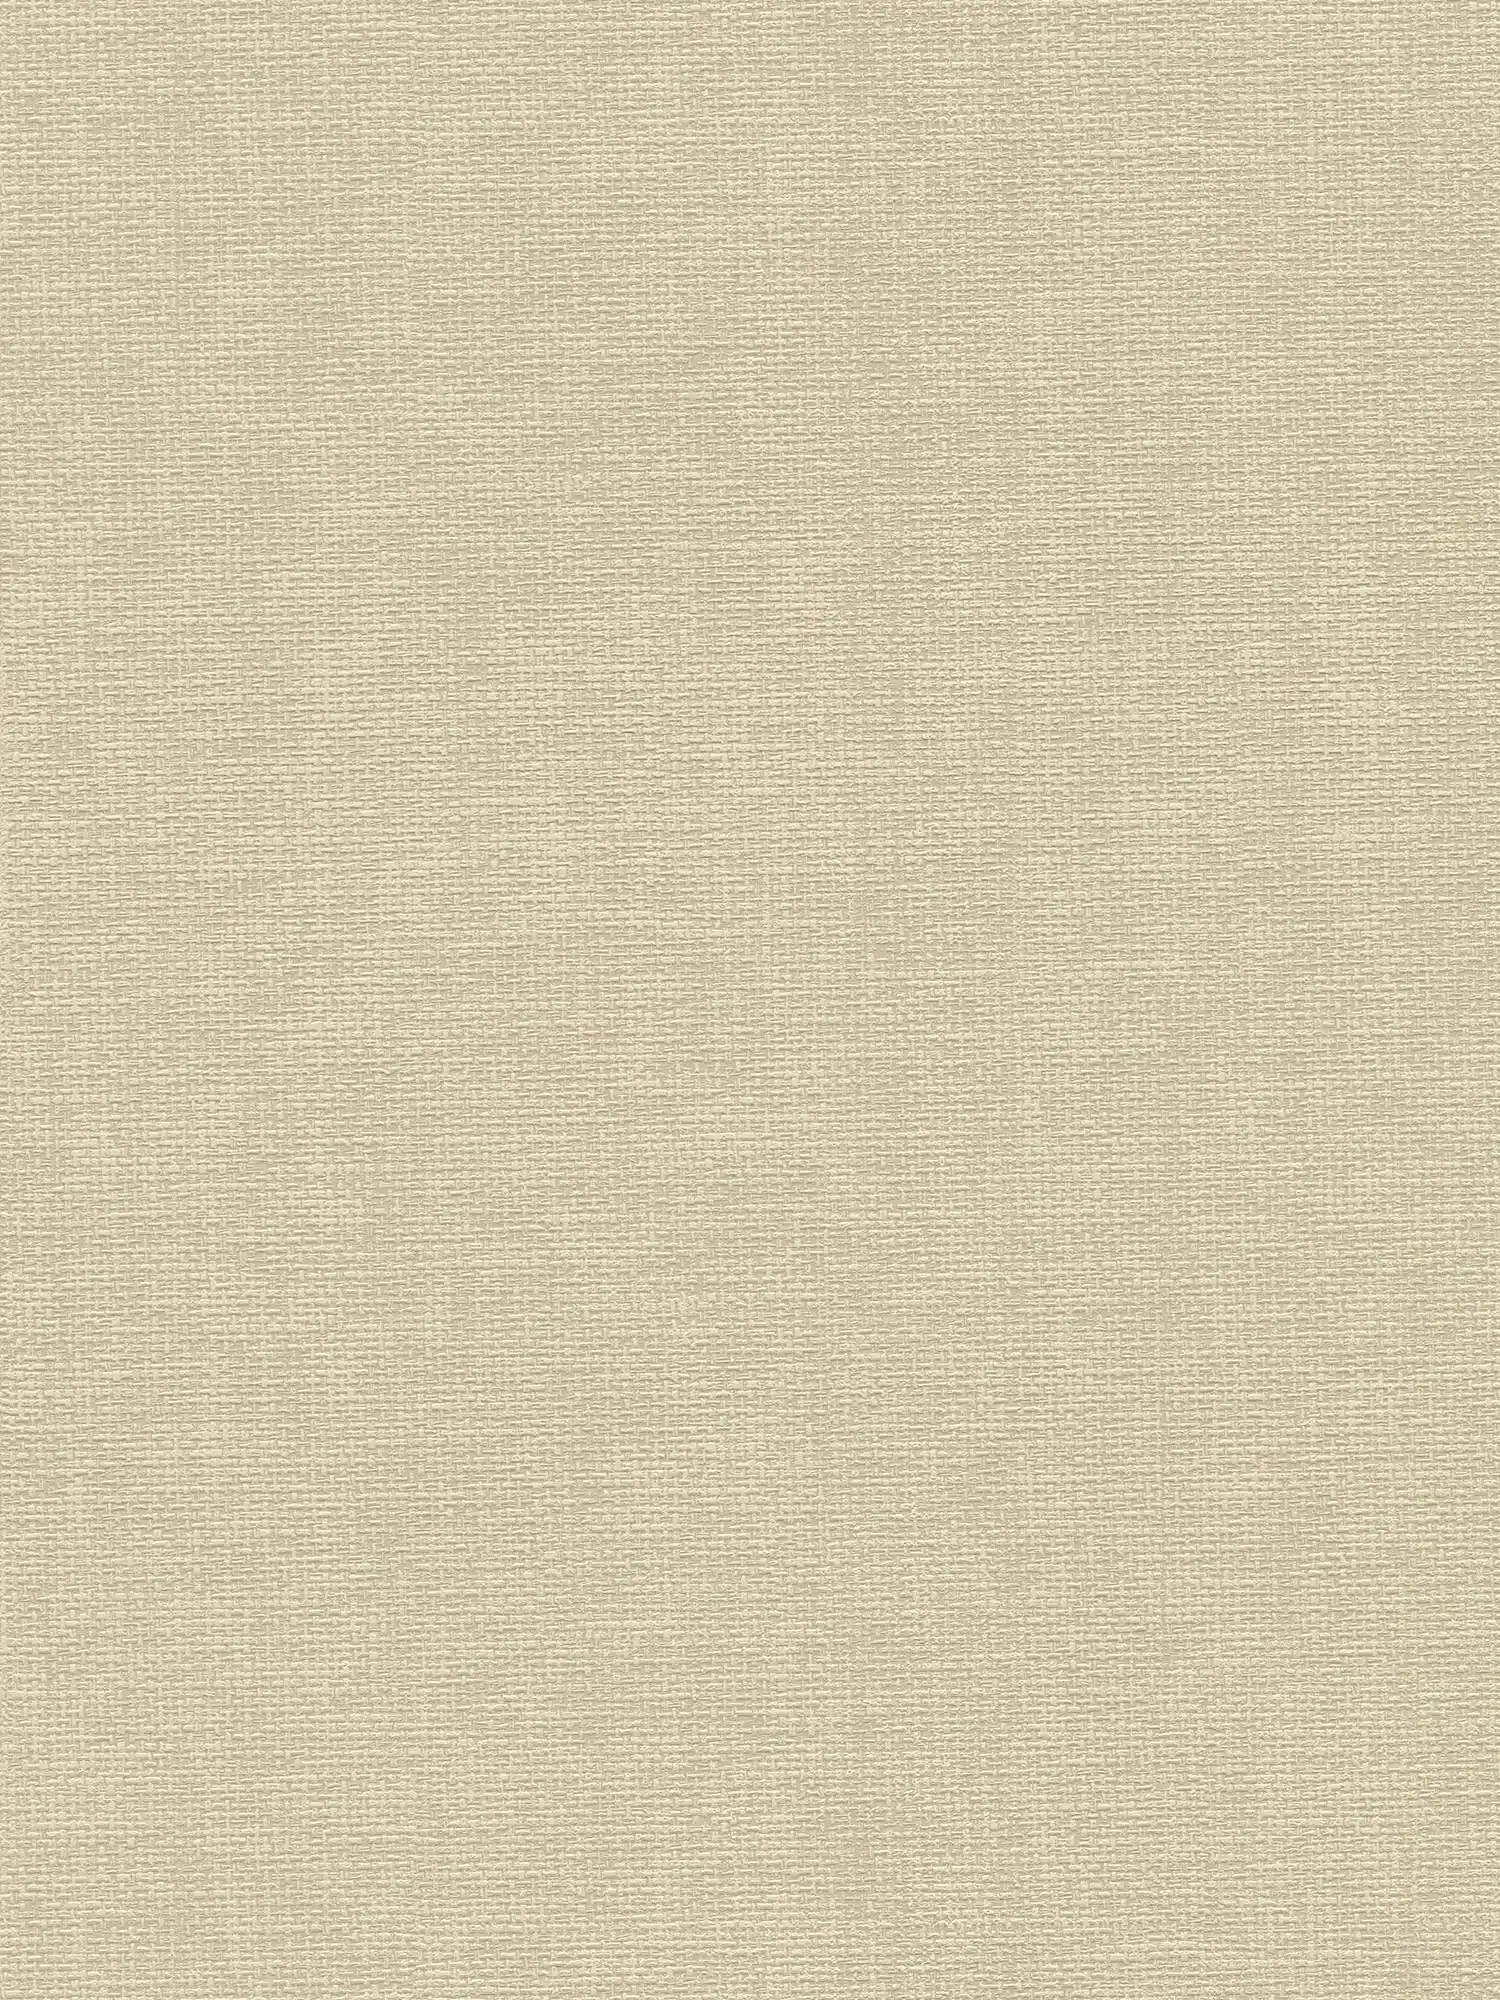 Textiel designbehang met stofstructuur - beige, grijs
